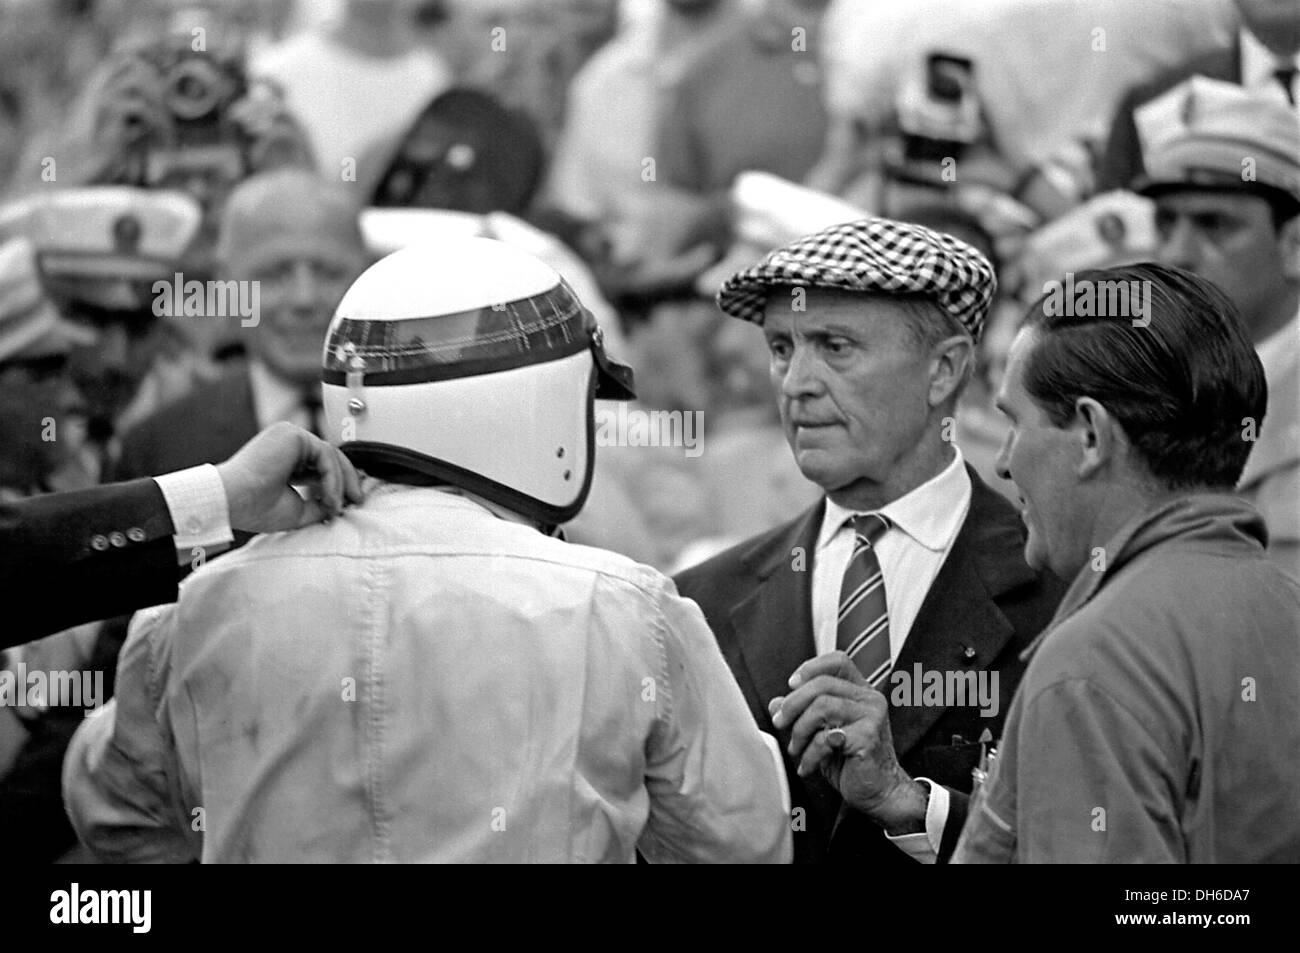 Stewart nach dem Sieg in einem BRM mit Louis Chiron - vor dem Krieg Sterne Fahrer, der die Rennen nach dem Krieg lief. Monaco GP 22. Mai 1966. Stockfoto